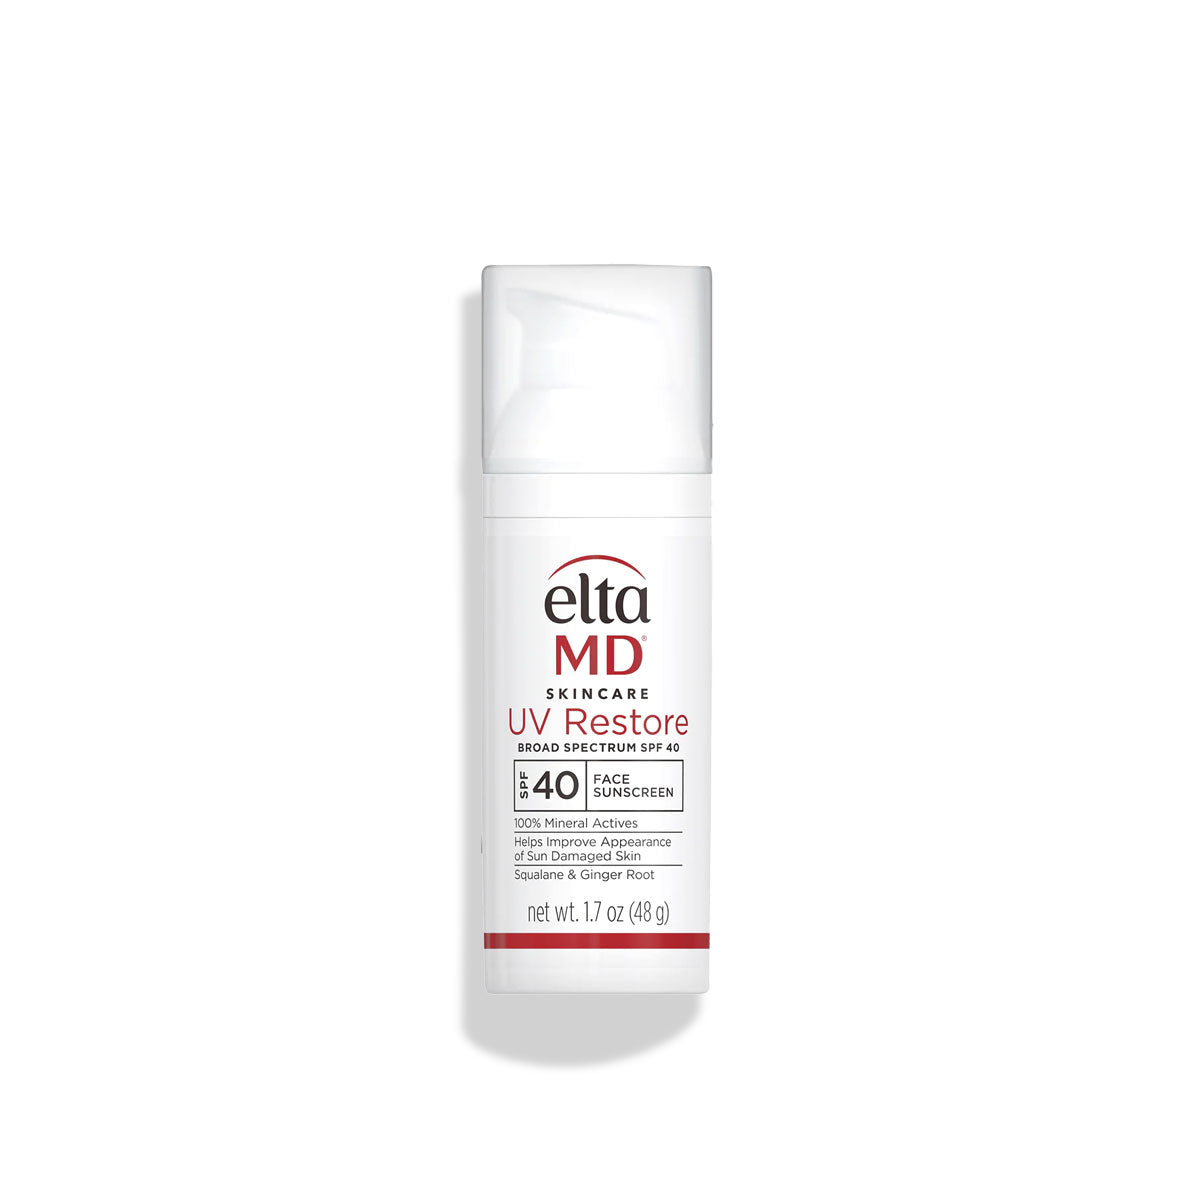 EltaMD UV Restore broad spectrum SPF 40 face sunscreen